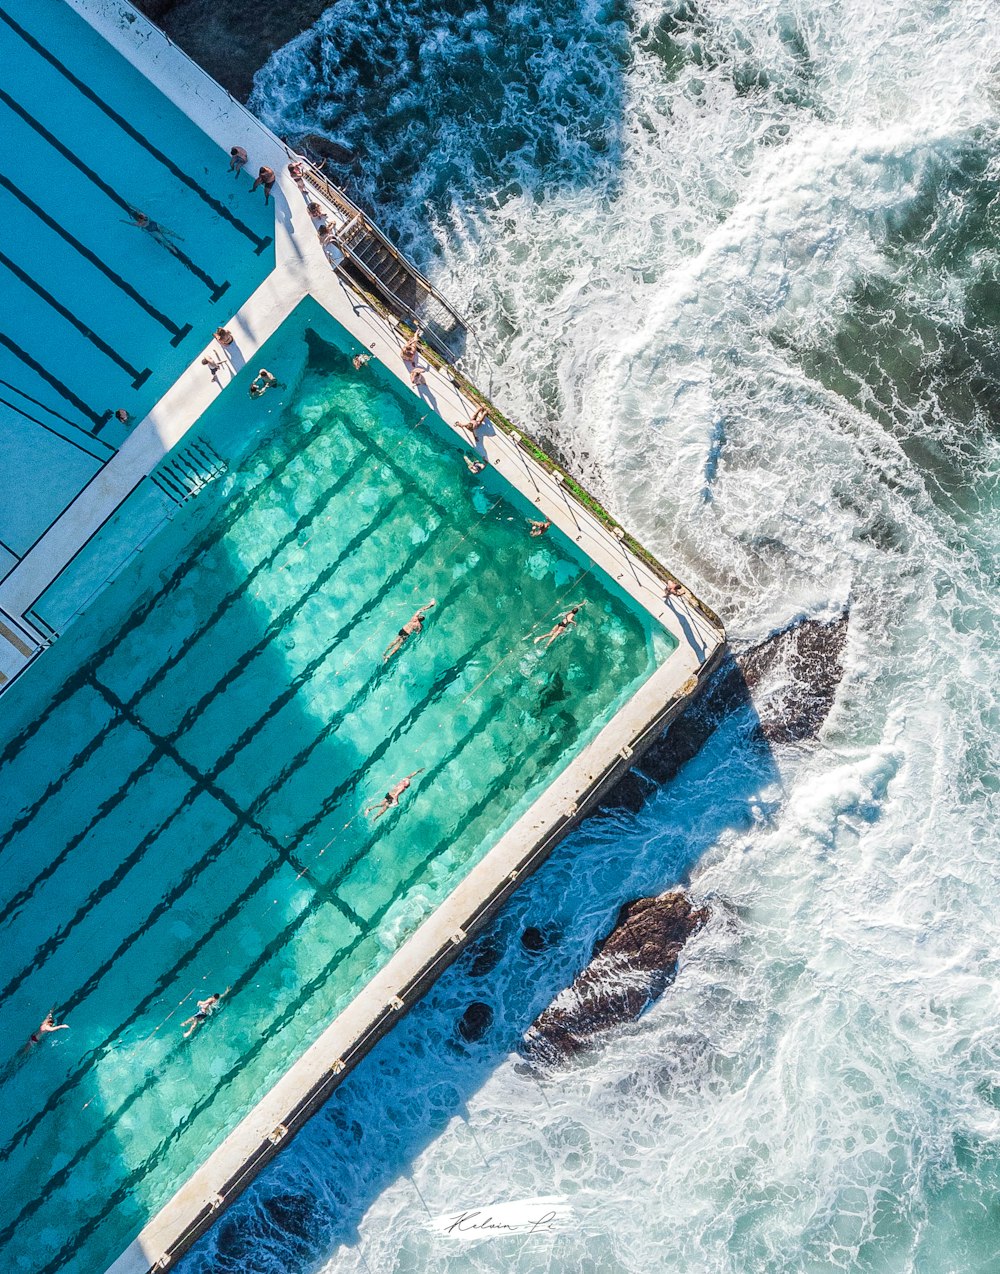 piscina blu e marrone accanto all'acqua blu e bianca dell'oceano durante il giorno